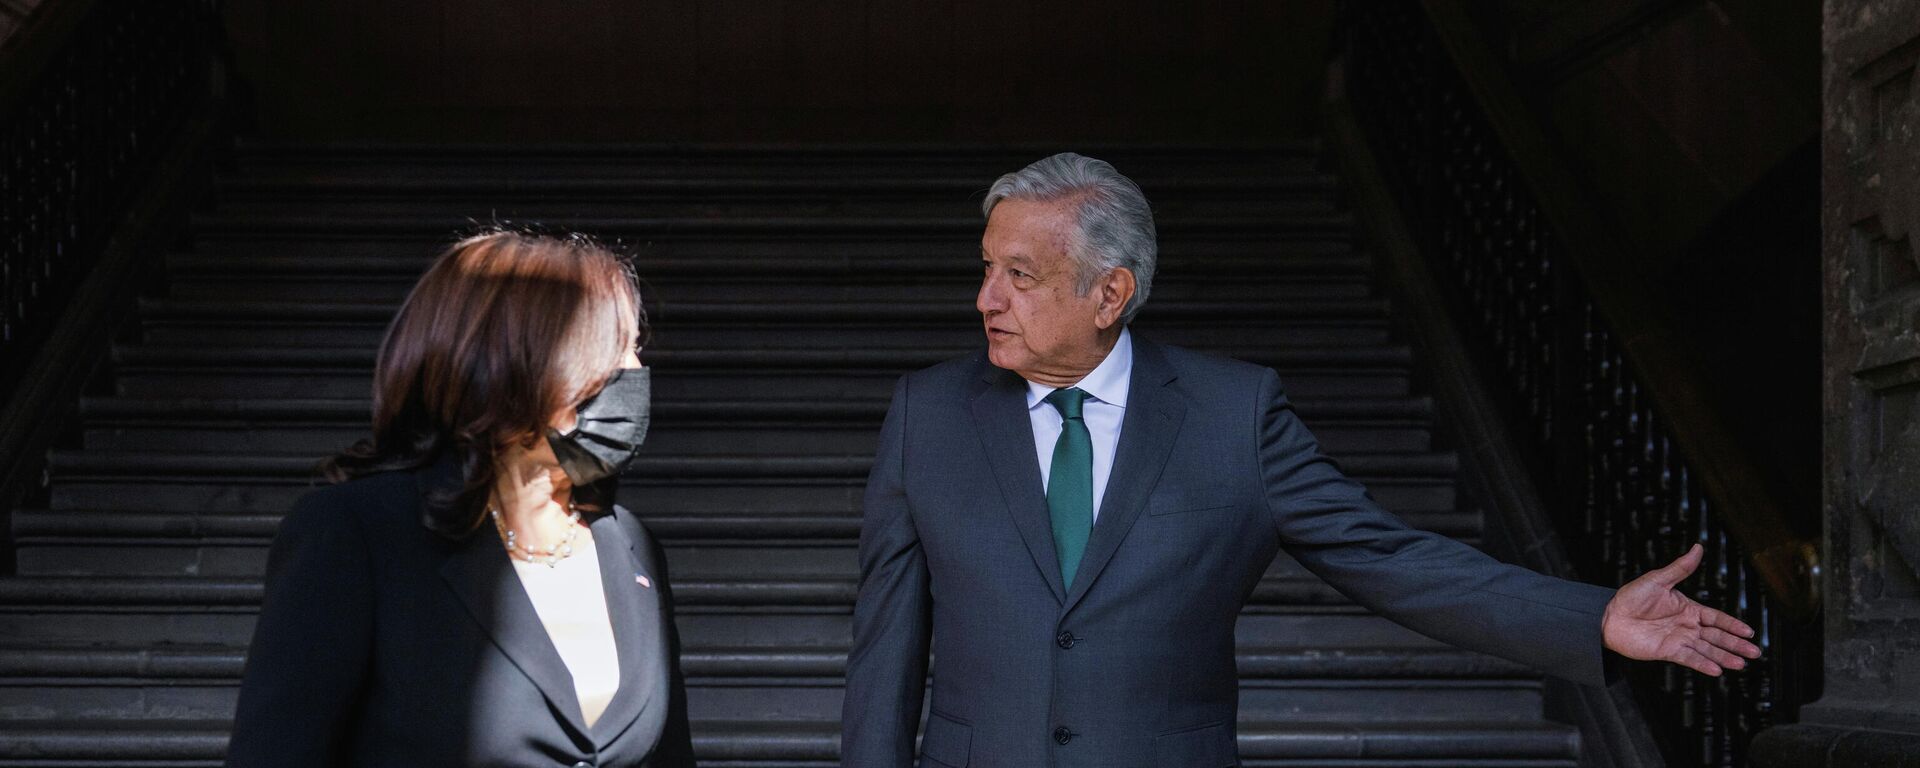 El presidente de México, Andrés Manuel López Obrador, recibe a la vicepresidente de EEUU, Kamala Harris, en el Palacio Nacional - Sputnik Mundo, 1920, 08.06.2021